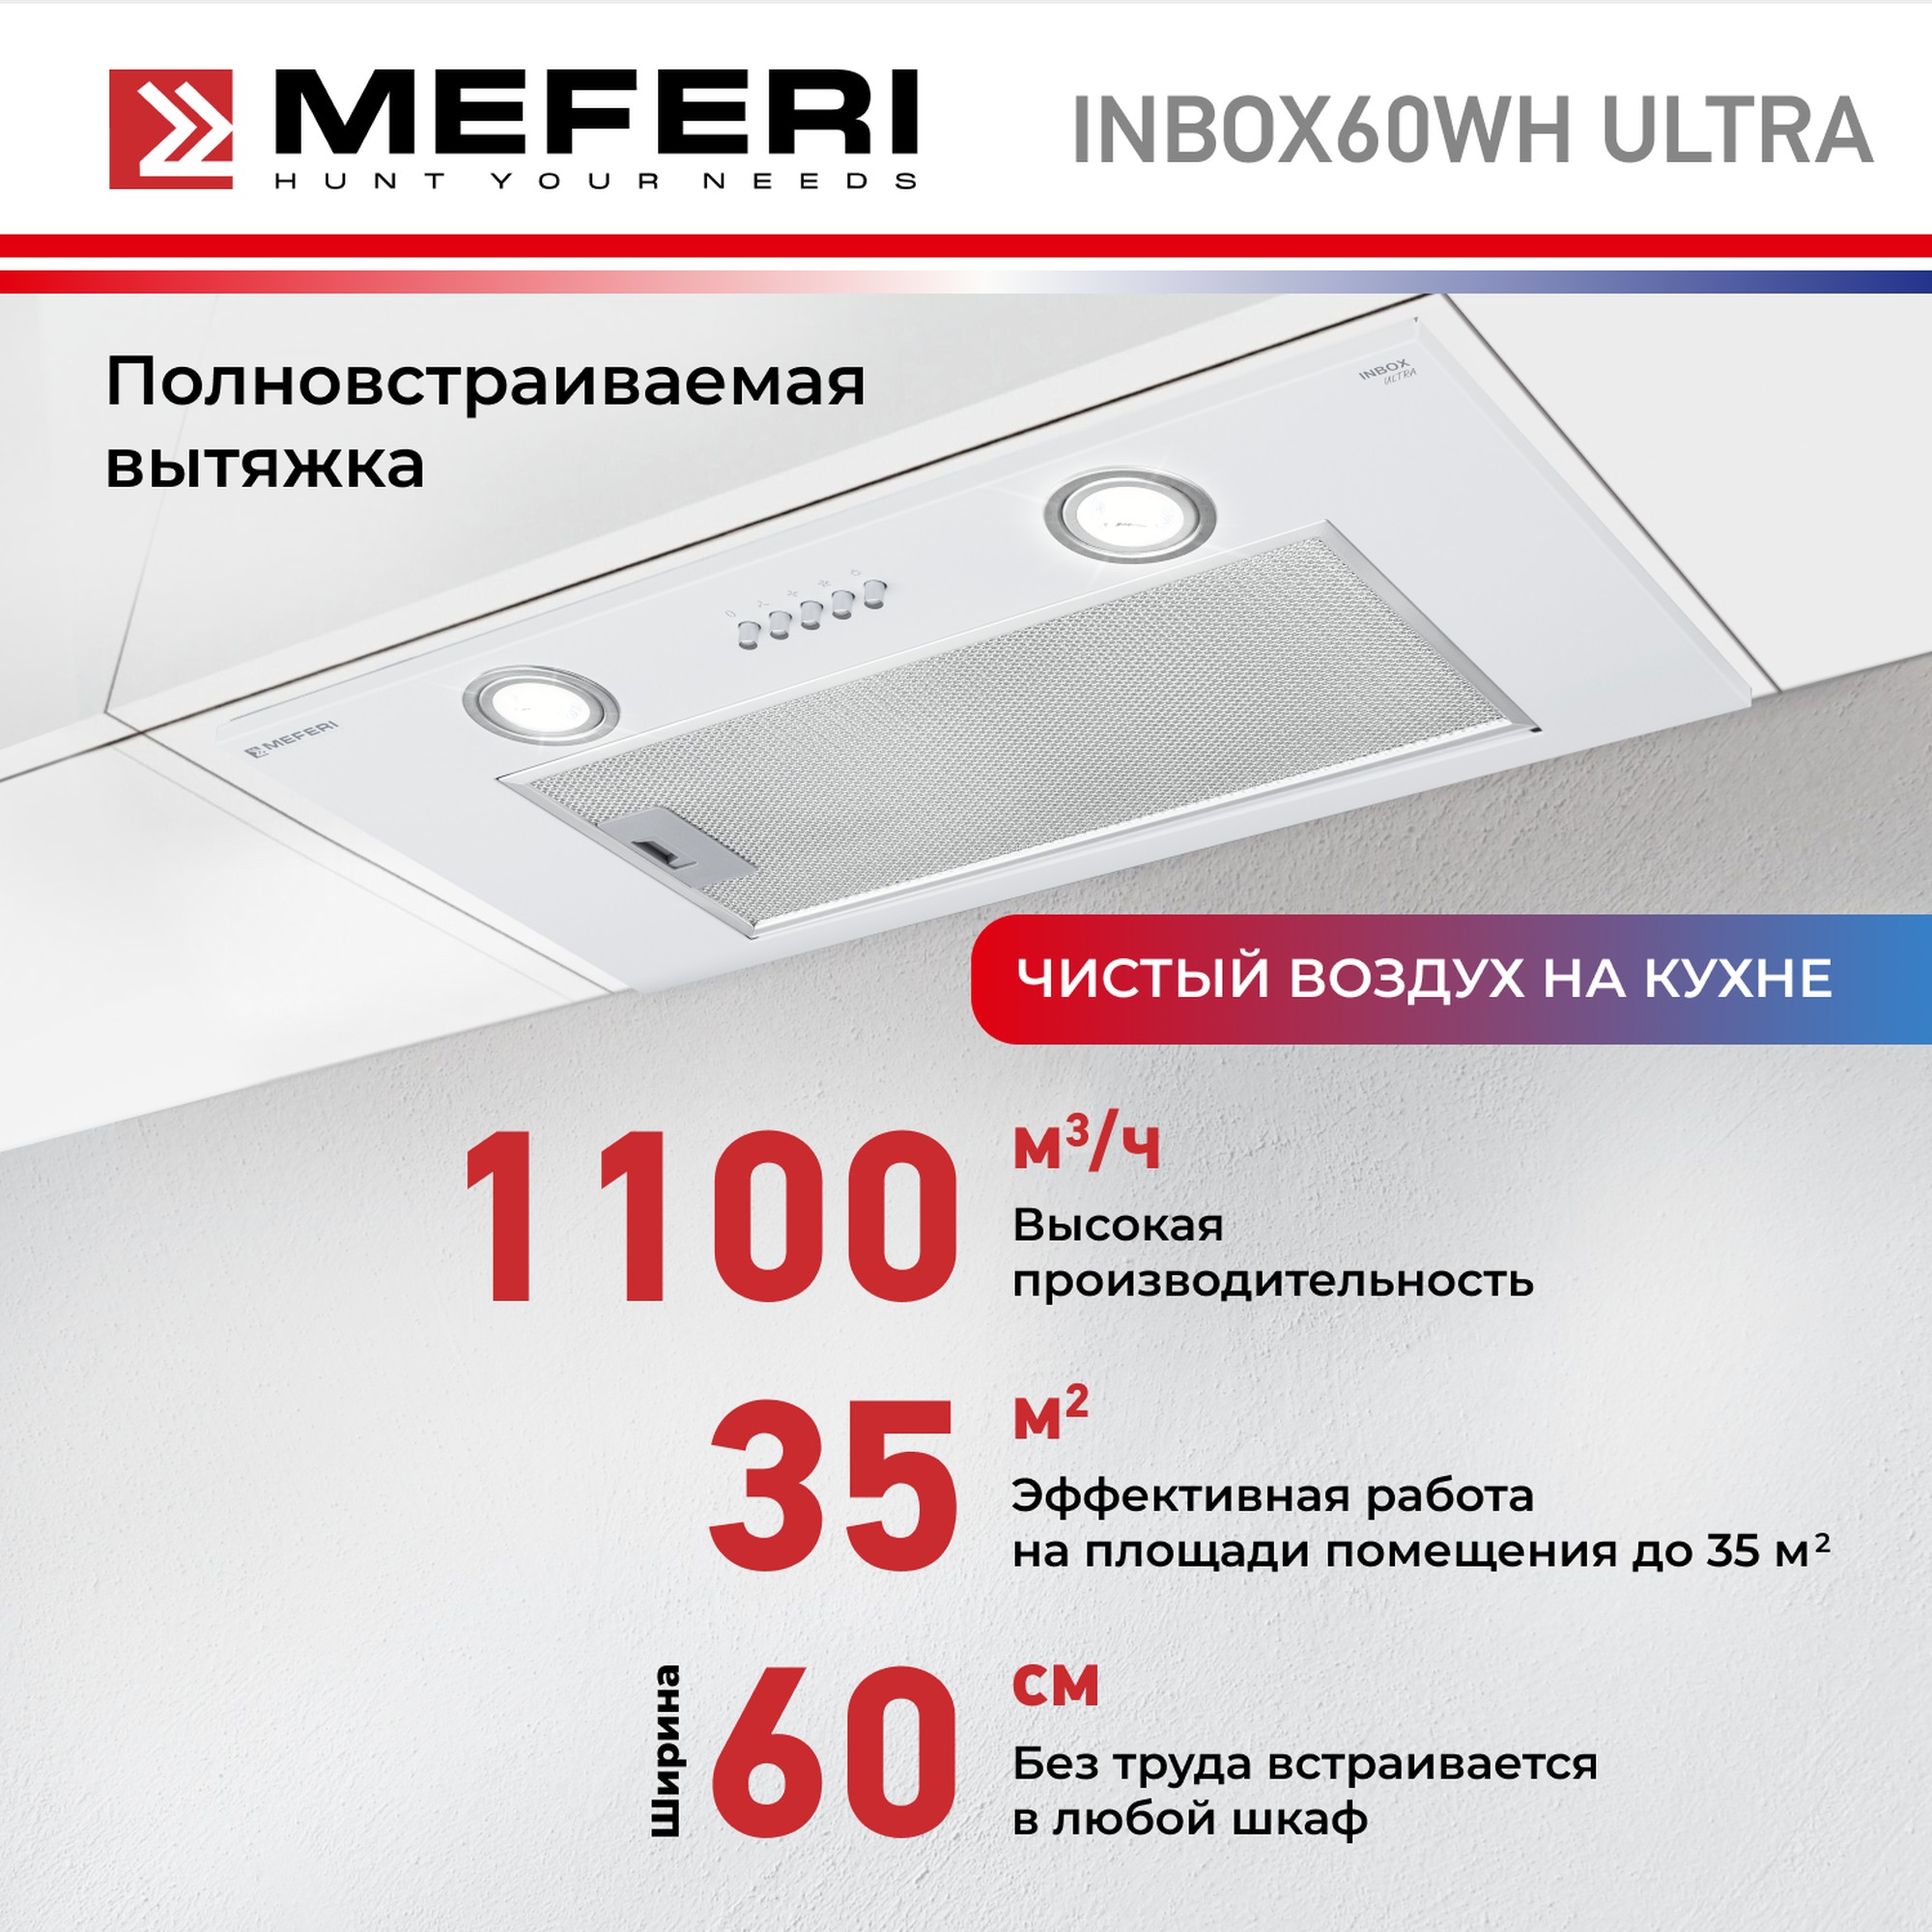 Вытяжка встраиваемая Meferi INBOX60WH ULTRA белая полновстраиваемая вытяжка meferi inbox60wh glass ultra